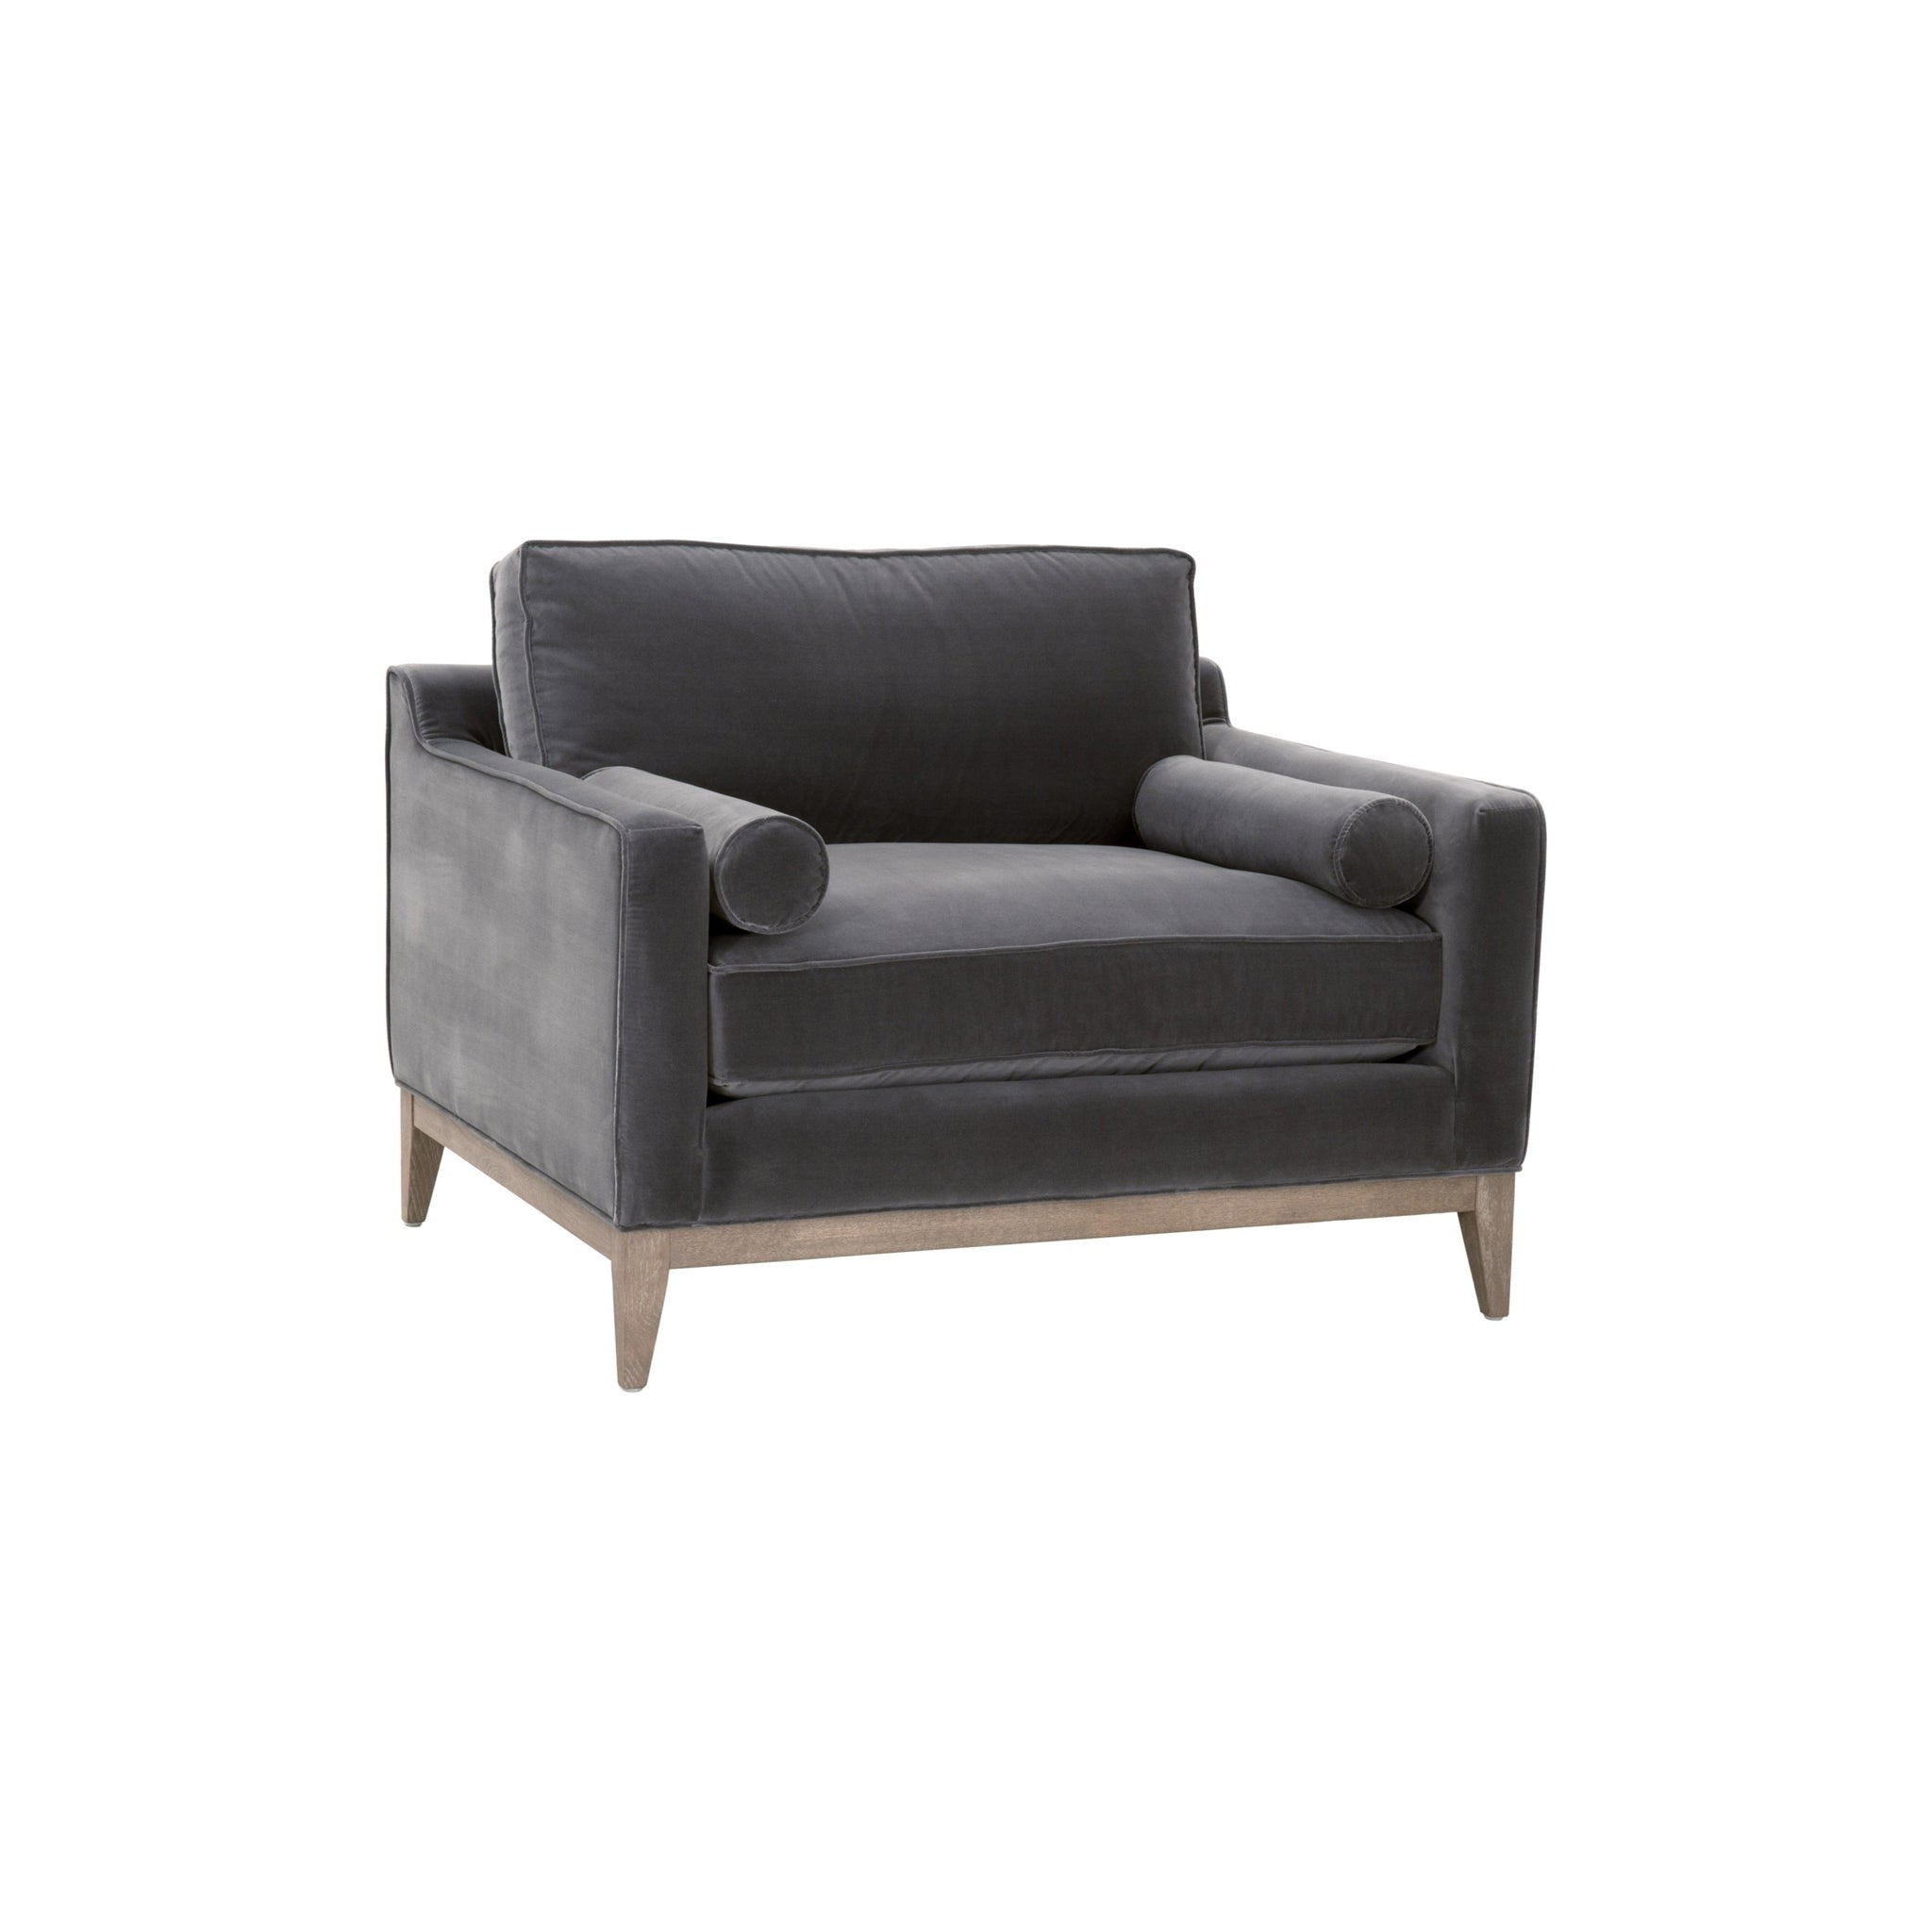 Wyndham Post Modern Sofa Chair